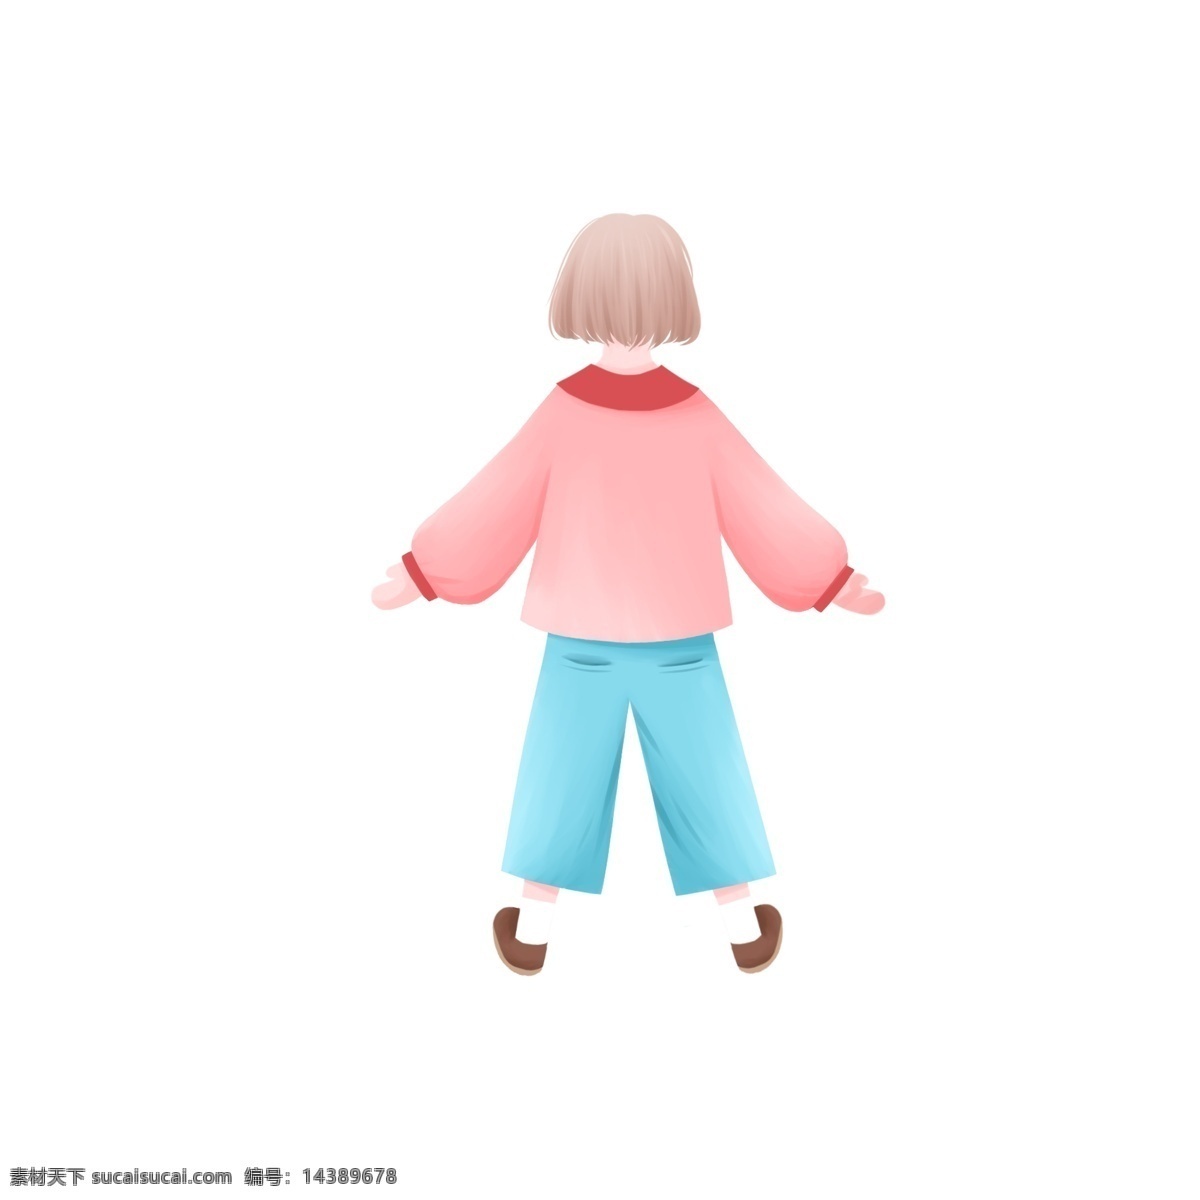 日 系 清新 风 穿着 卫 衣 牛仔裤 女孩子 日系 手绘 女孩 背影 人物 短发 女生 儿童 插画